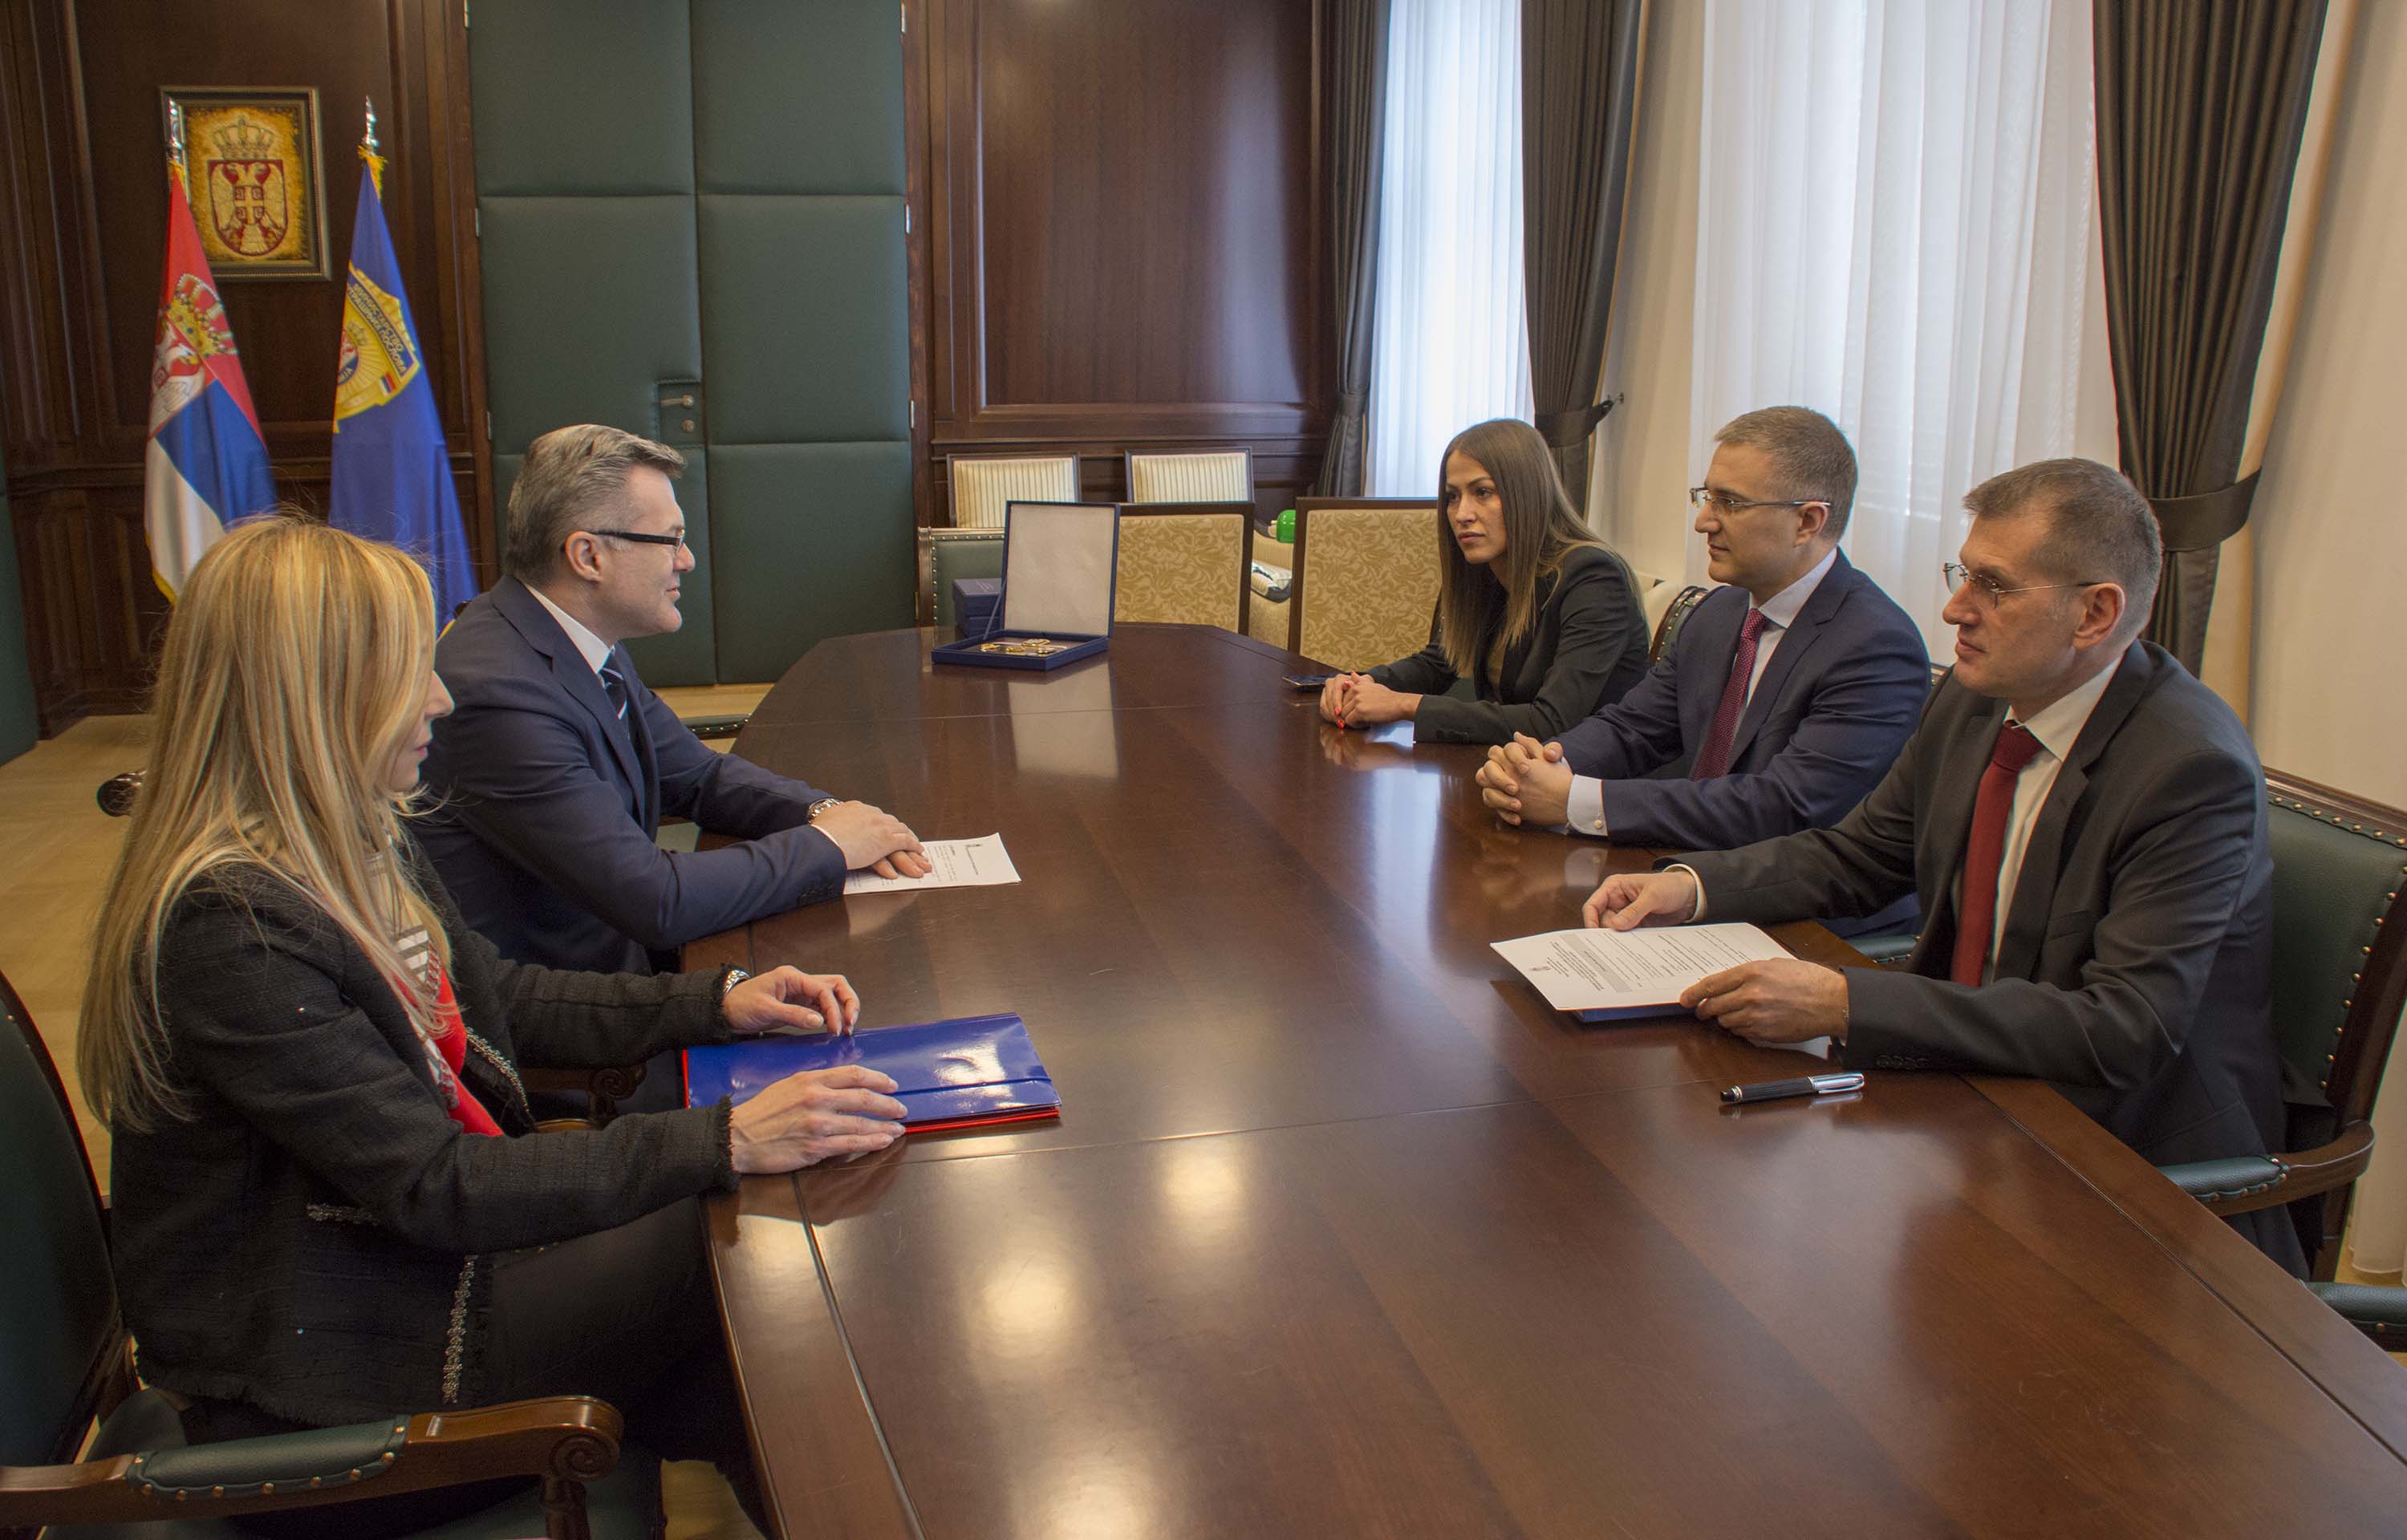 Ministar Stefanović primio plaketu Odbora za kontrolu službi bezbednosti Narodne skupštine